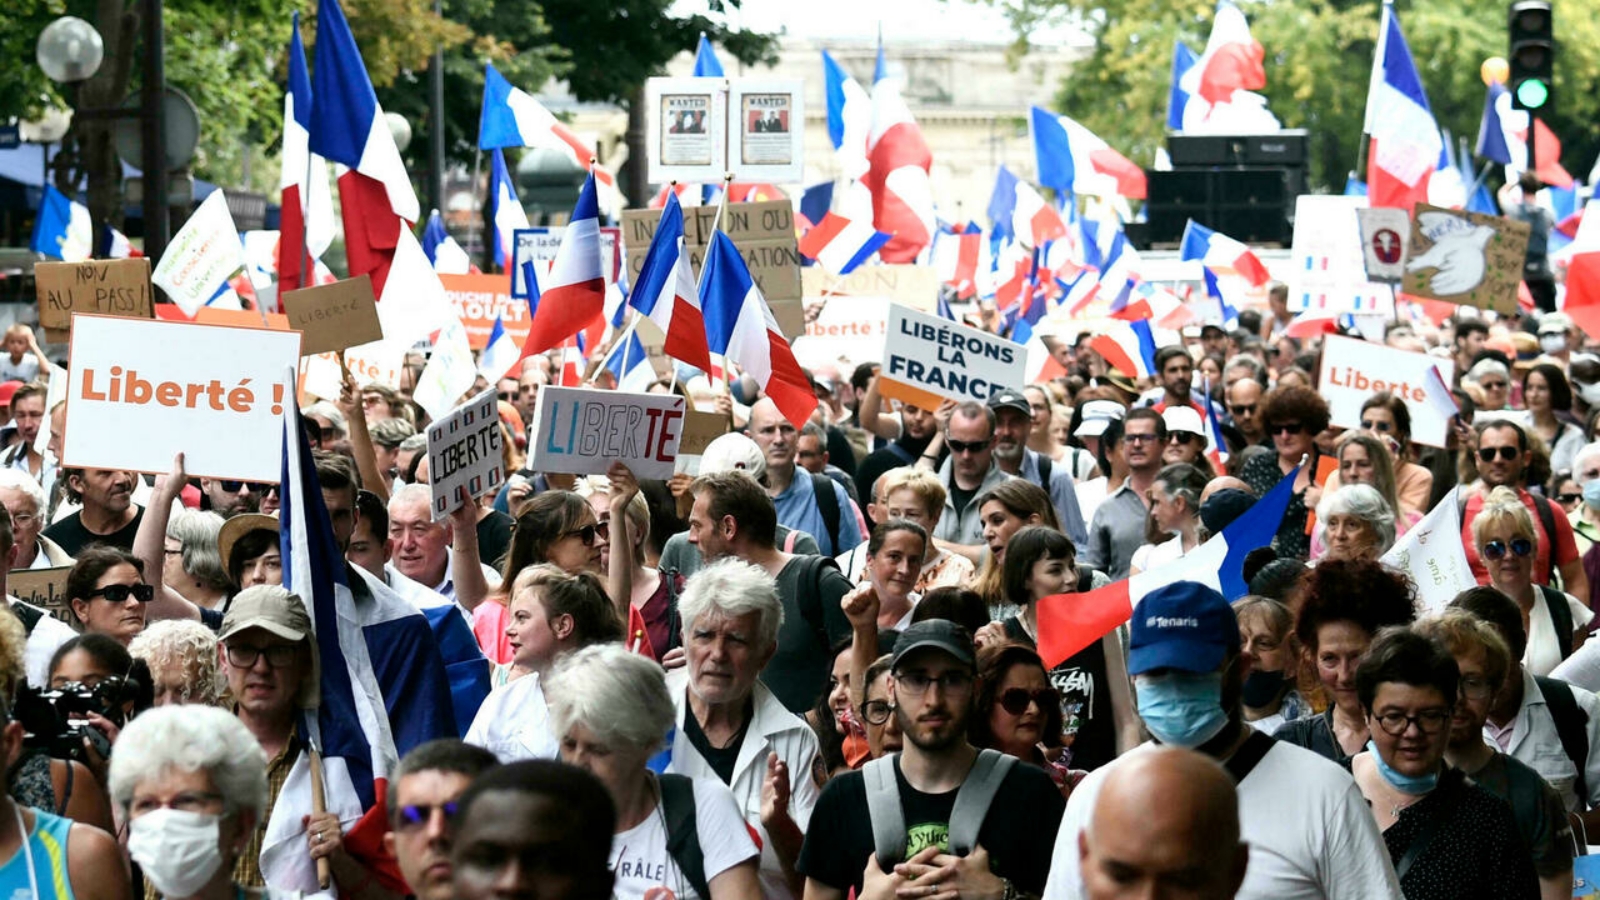 متظاهرون في مسيرة خلال يوم وطني للإحتجاج على بطاقة الصحة Covid-19، باريس. بتاريخ 21 آب/ أغسطس،2021.